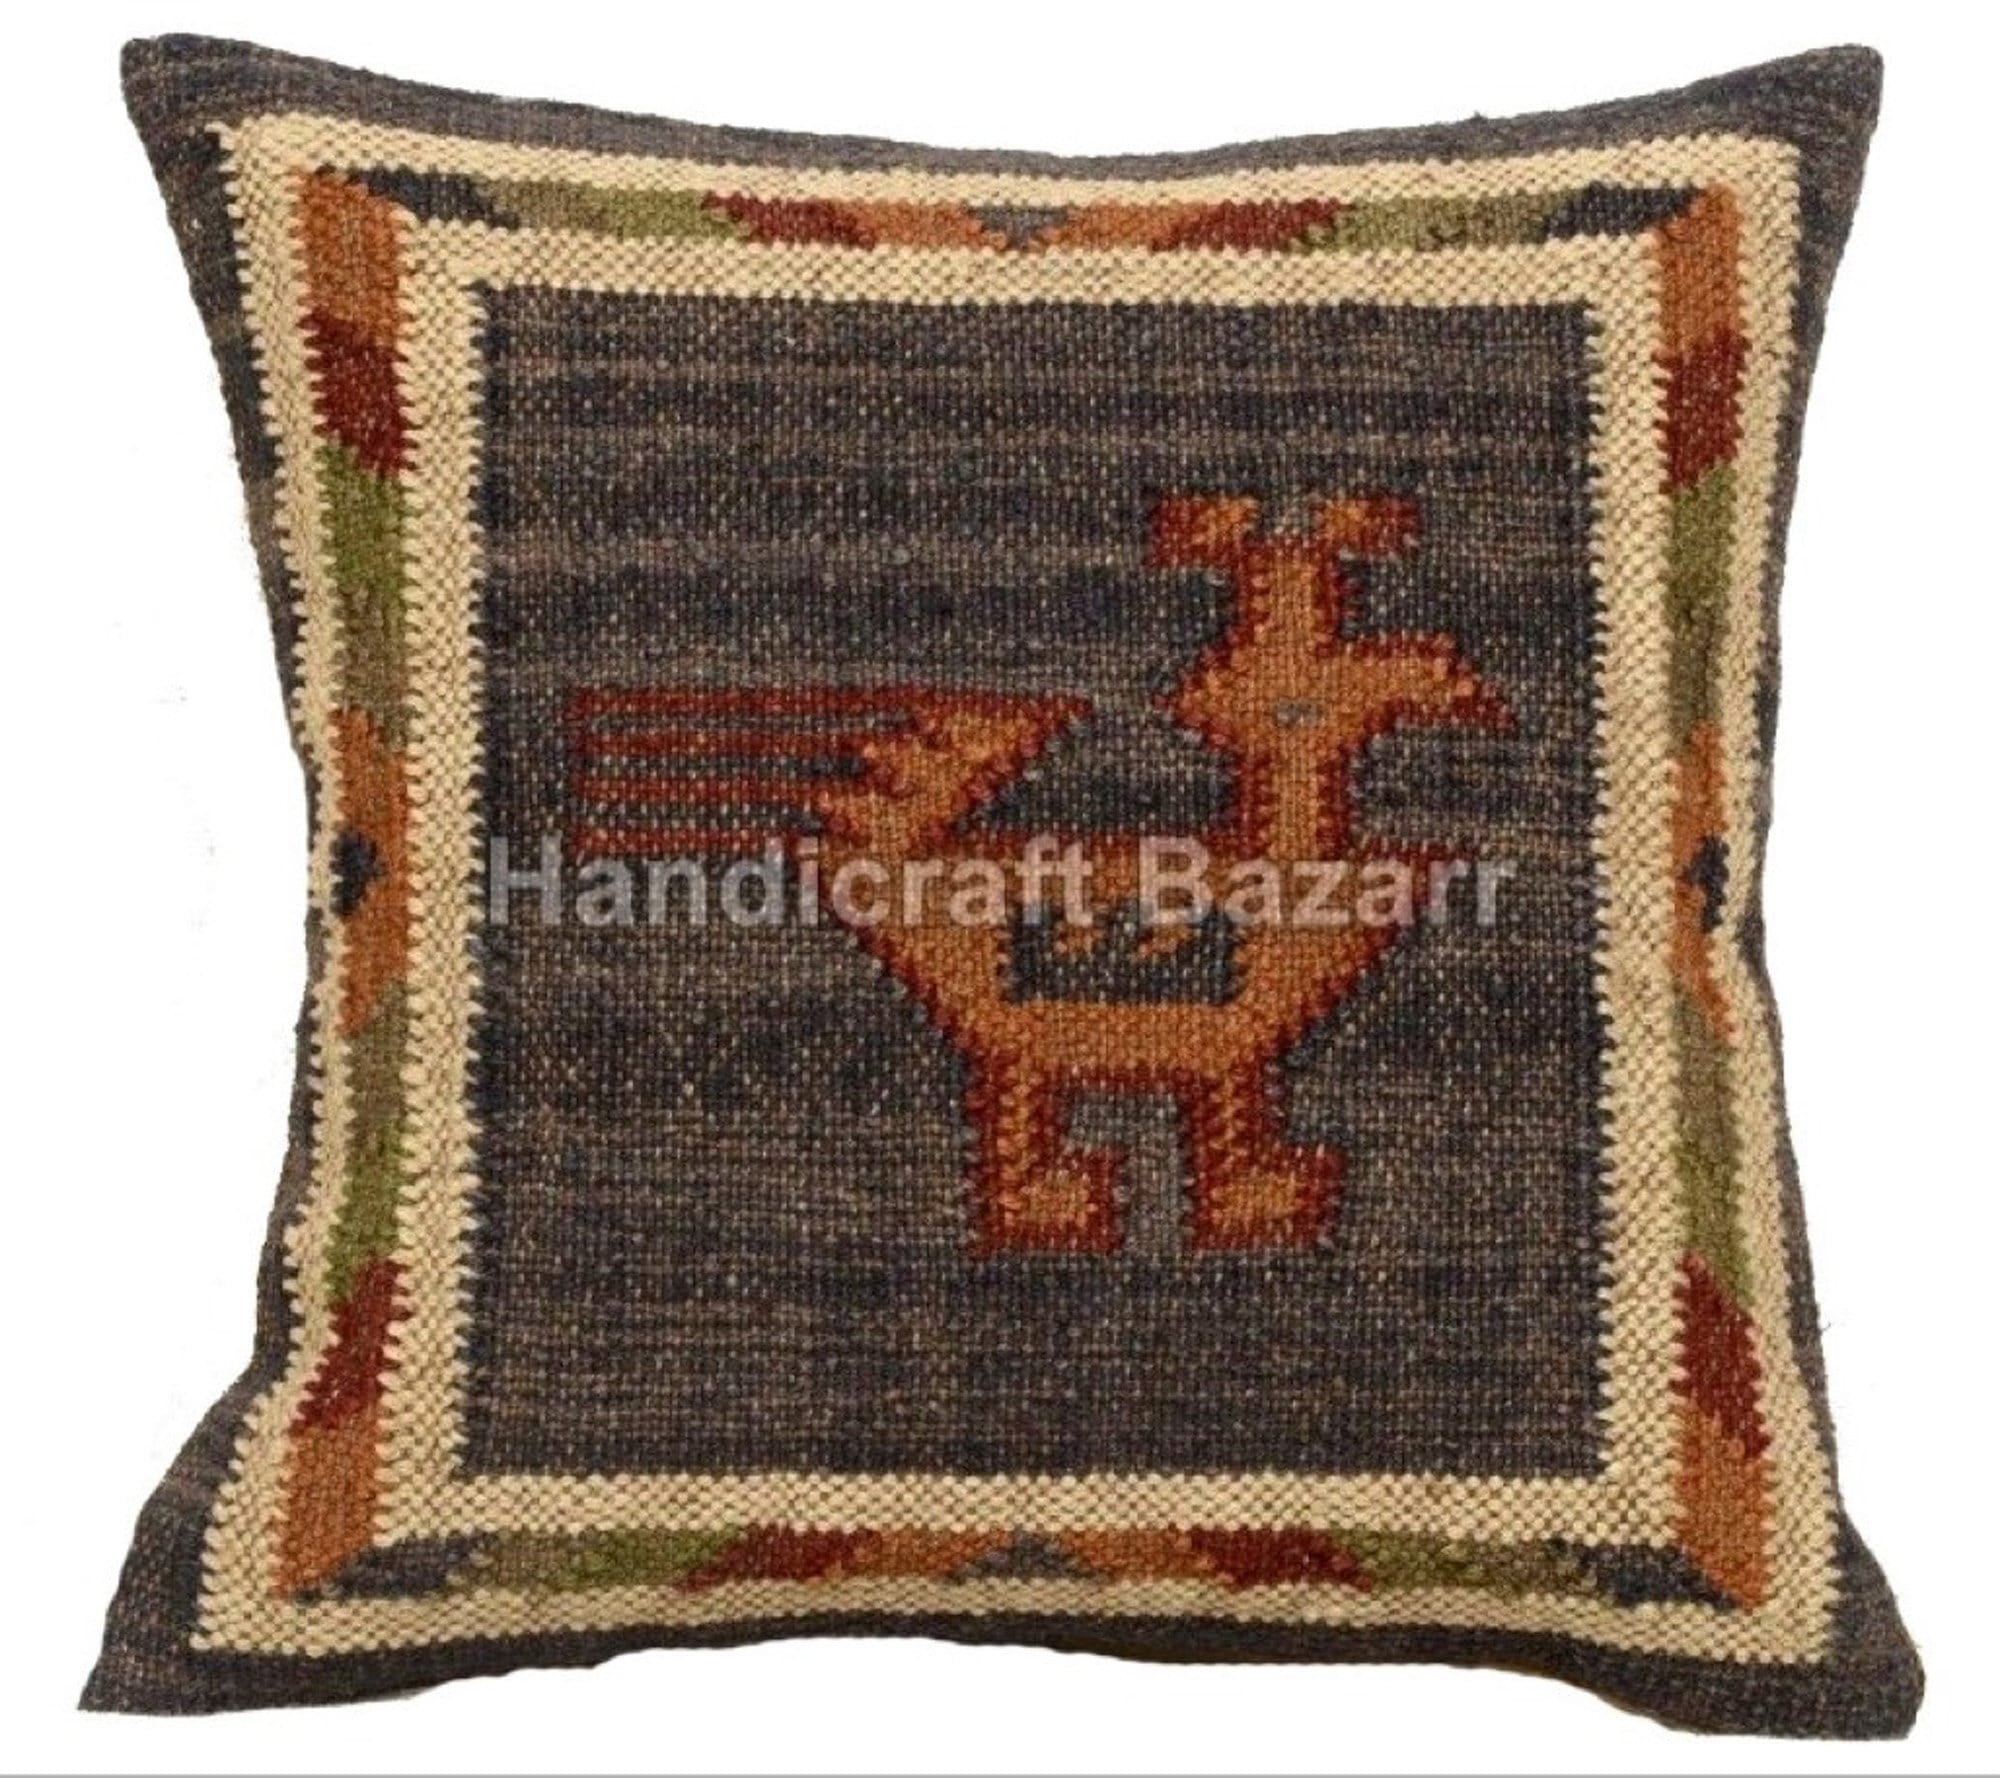 Wool Jute Hand Woven Kilim 18x18 Cushion Cover Throw Rustic Pillows Cases 1092 